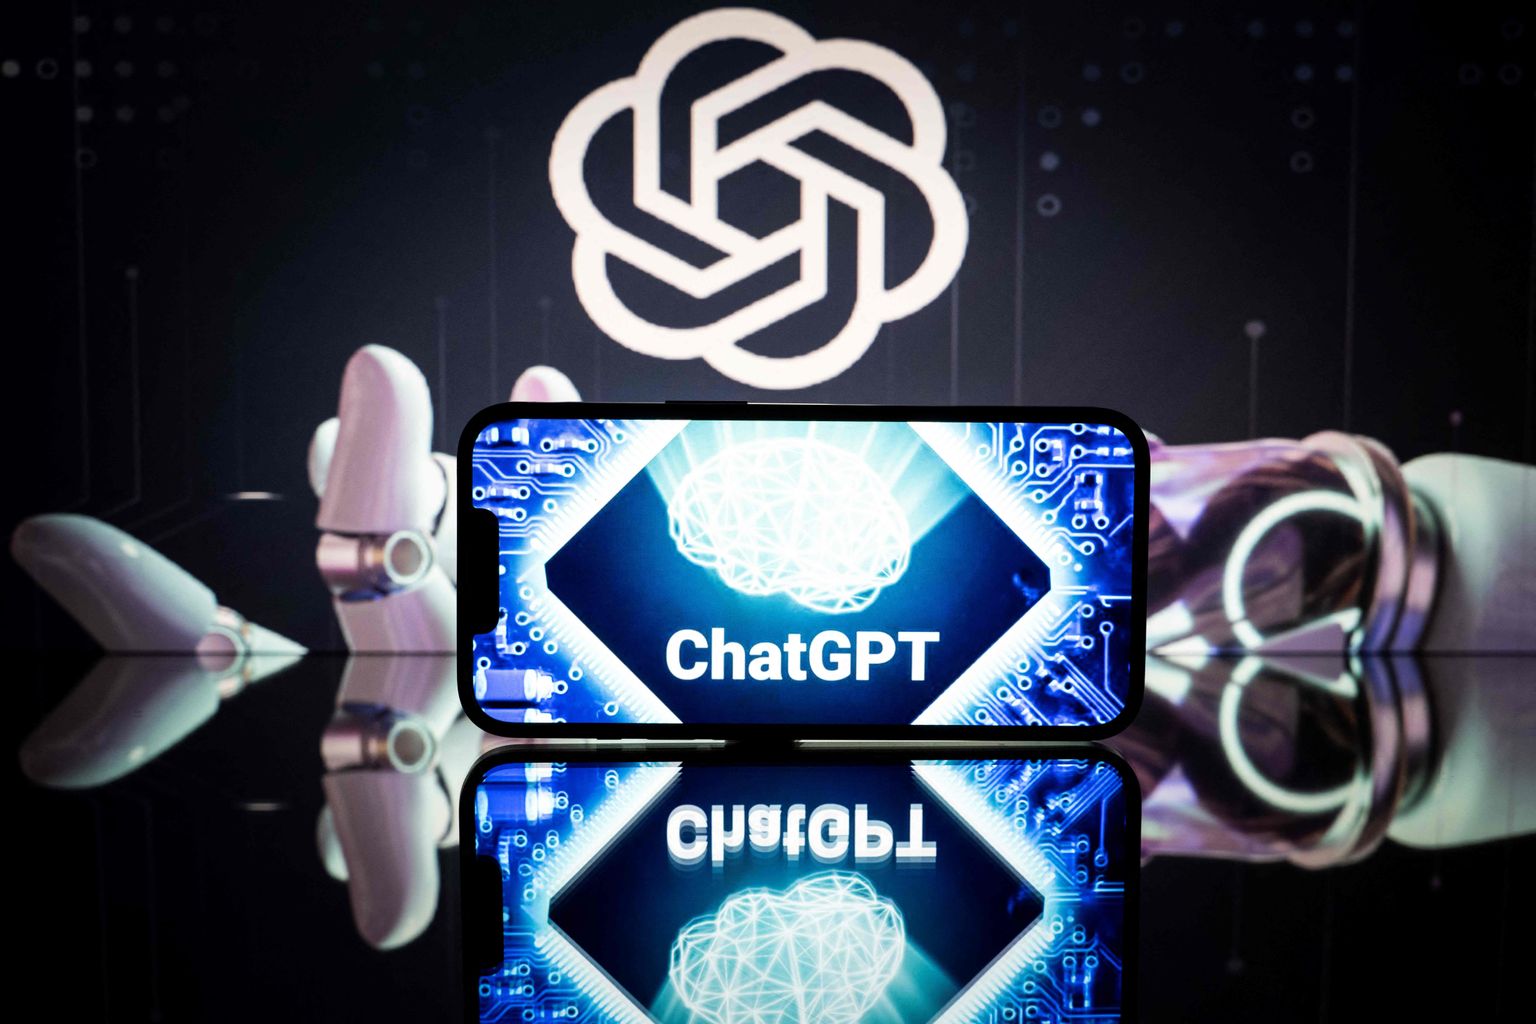 ChatGPT saab kammitsatest priiks: uued pistikprogrammid toovad tehsisintellekti treeningandmetesse kõige värskema info otse veebist. Nii võib küsida väljuvate lendude või hotellikohtade kohta või teada saada viimastest uudistest.